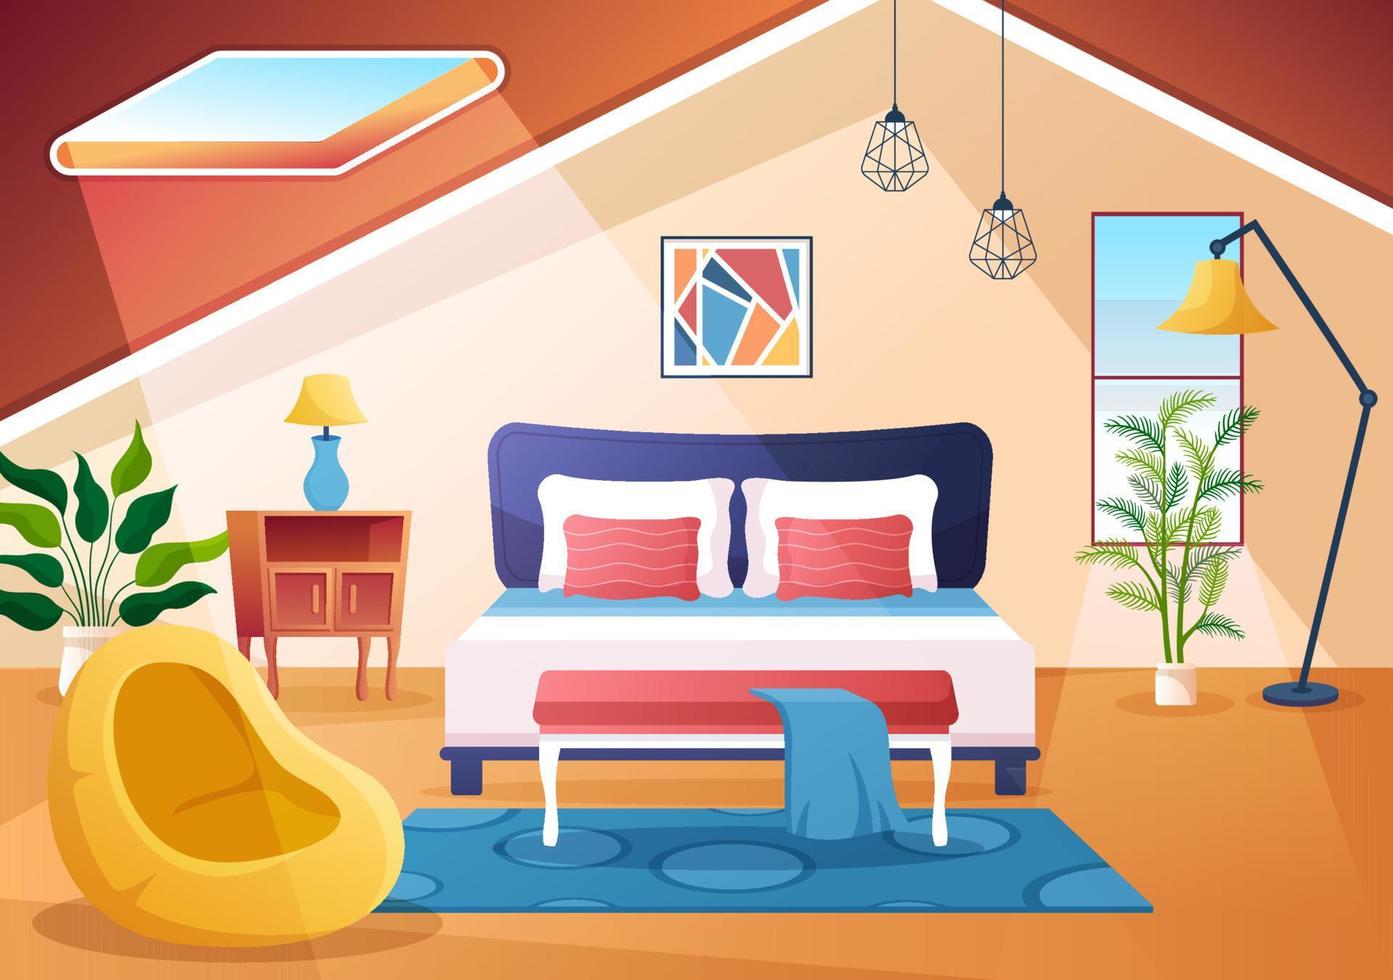 acogedor interior de dormitorio con muebles como cama, armario, mesita de noche, jarrón, araña de estilo moderno en ilustración de vectores de dibujos animados